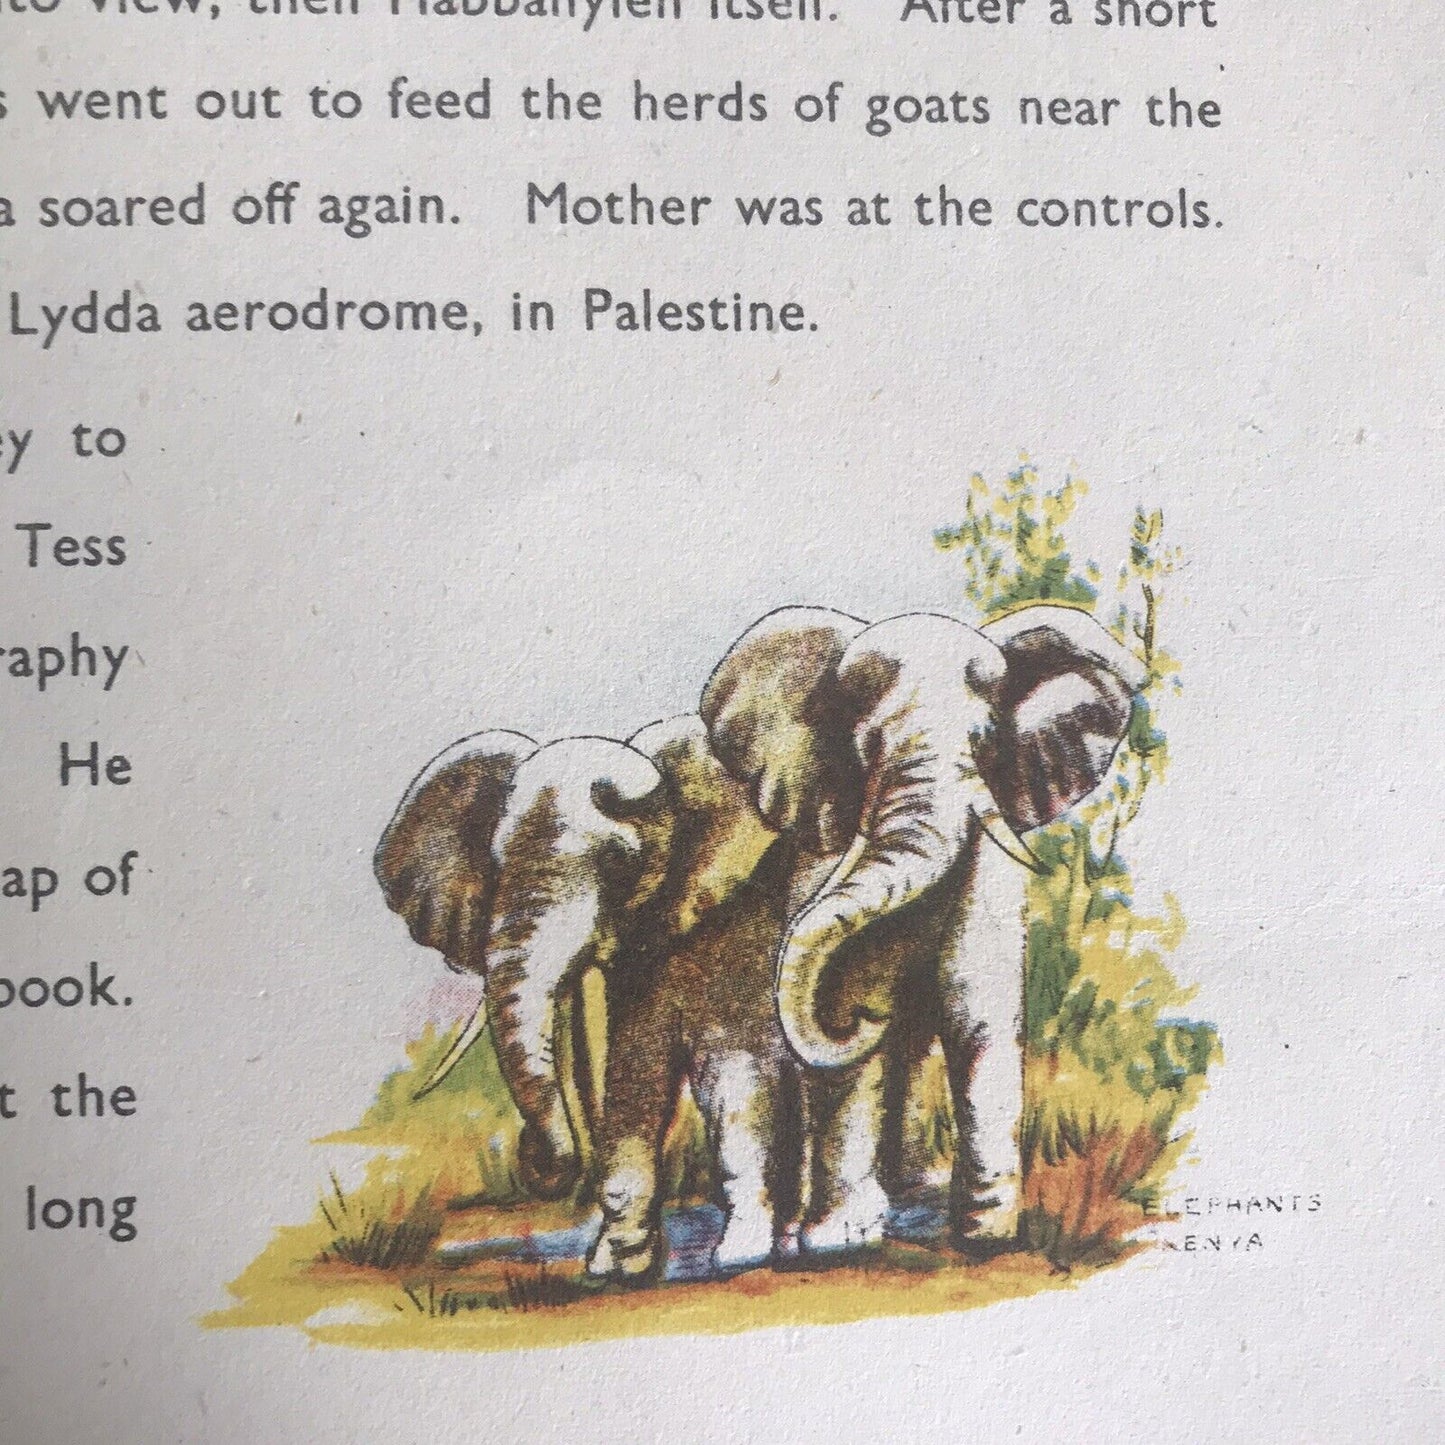 1943 Through The British Commonwealth(Irak, Palestine & East Africa) Stella Mead Honeyburn Books (UK)